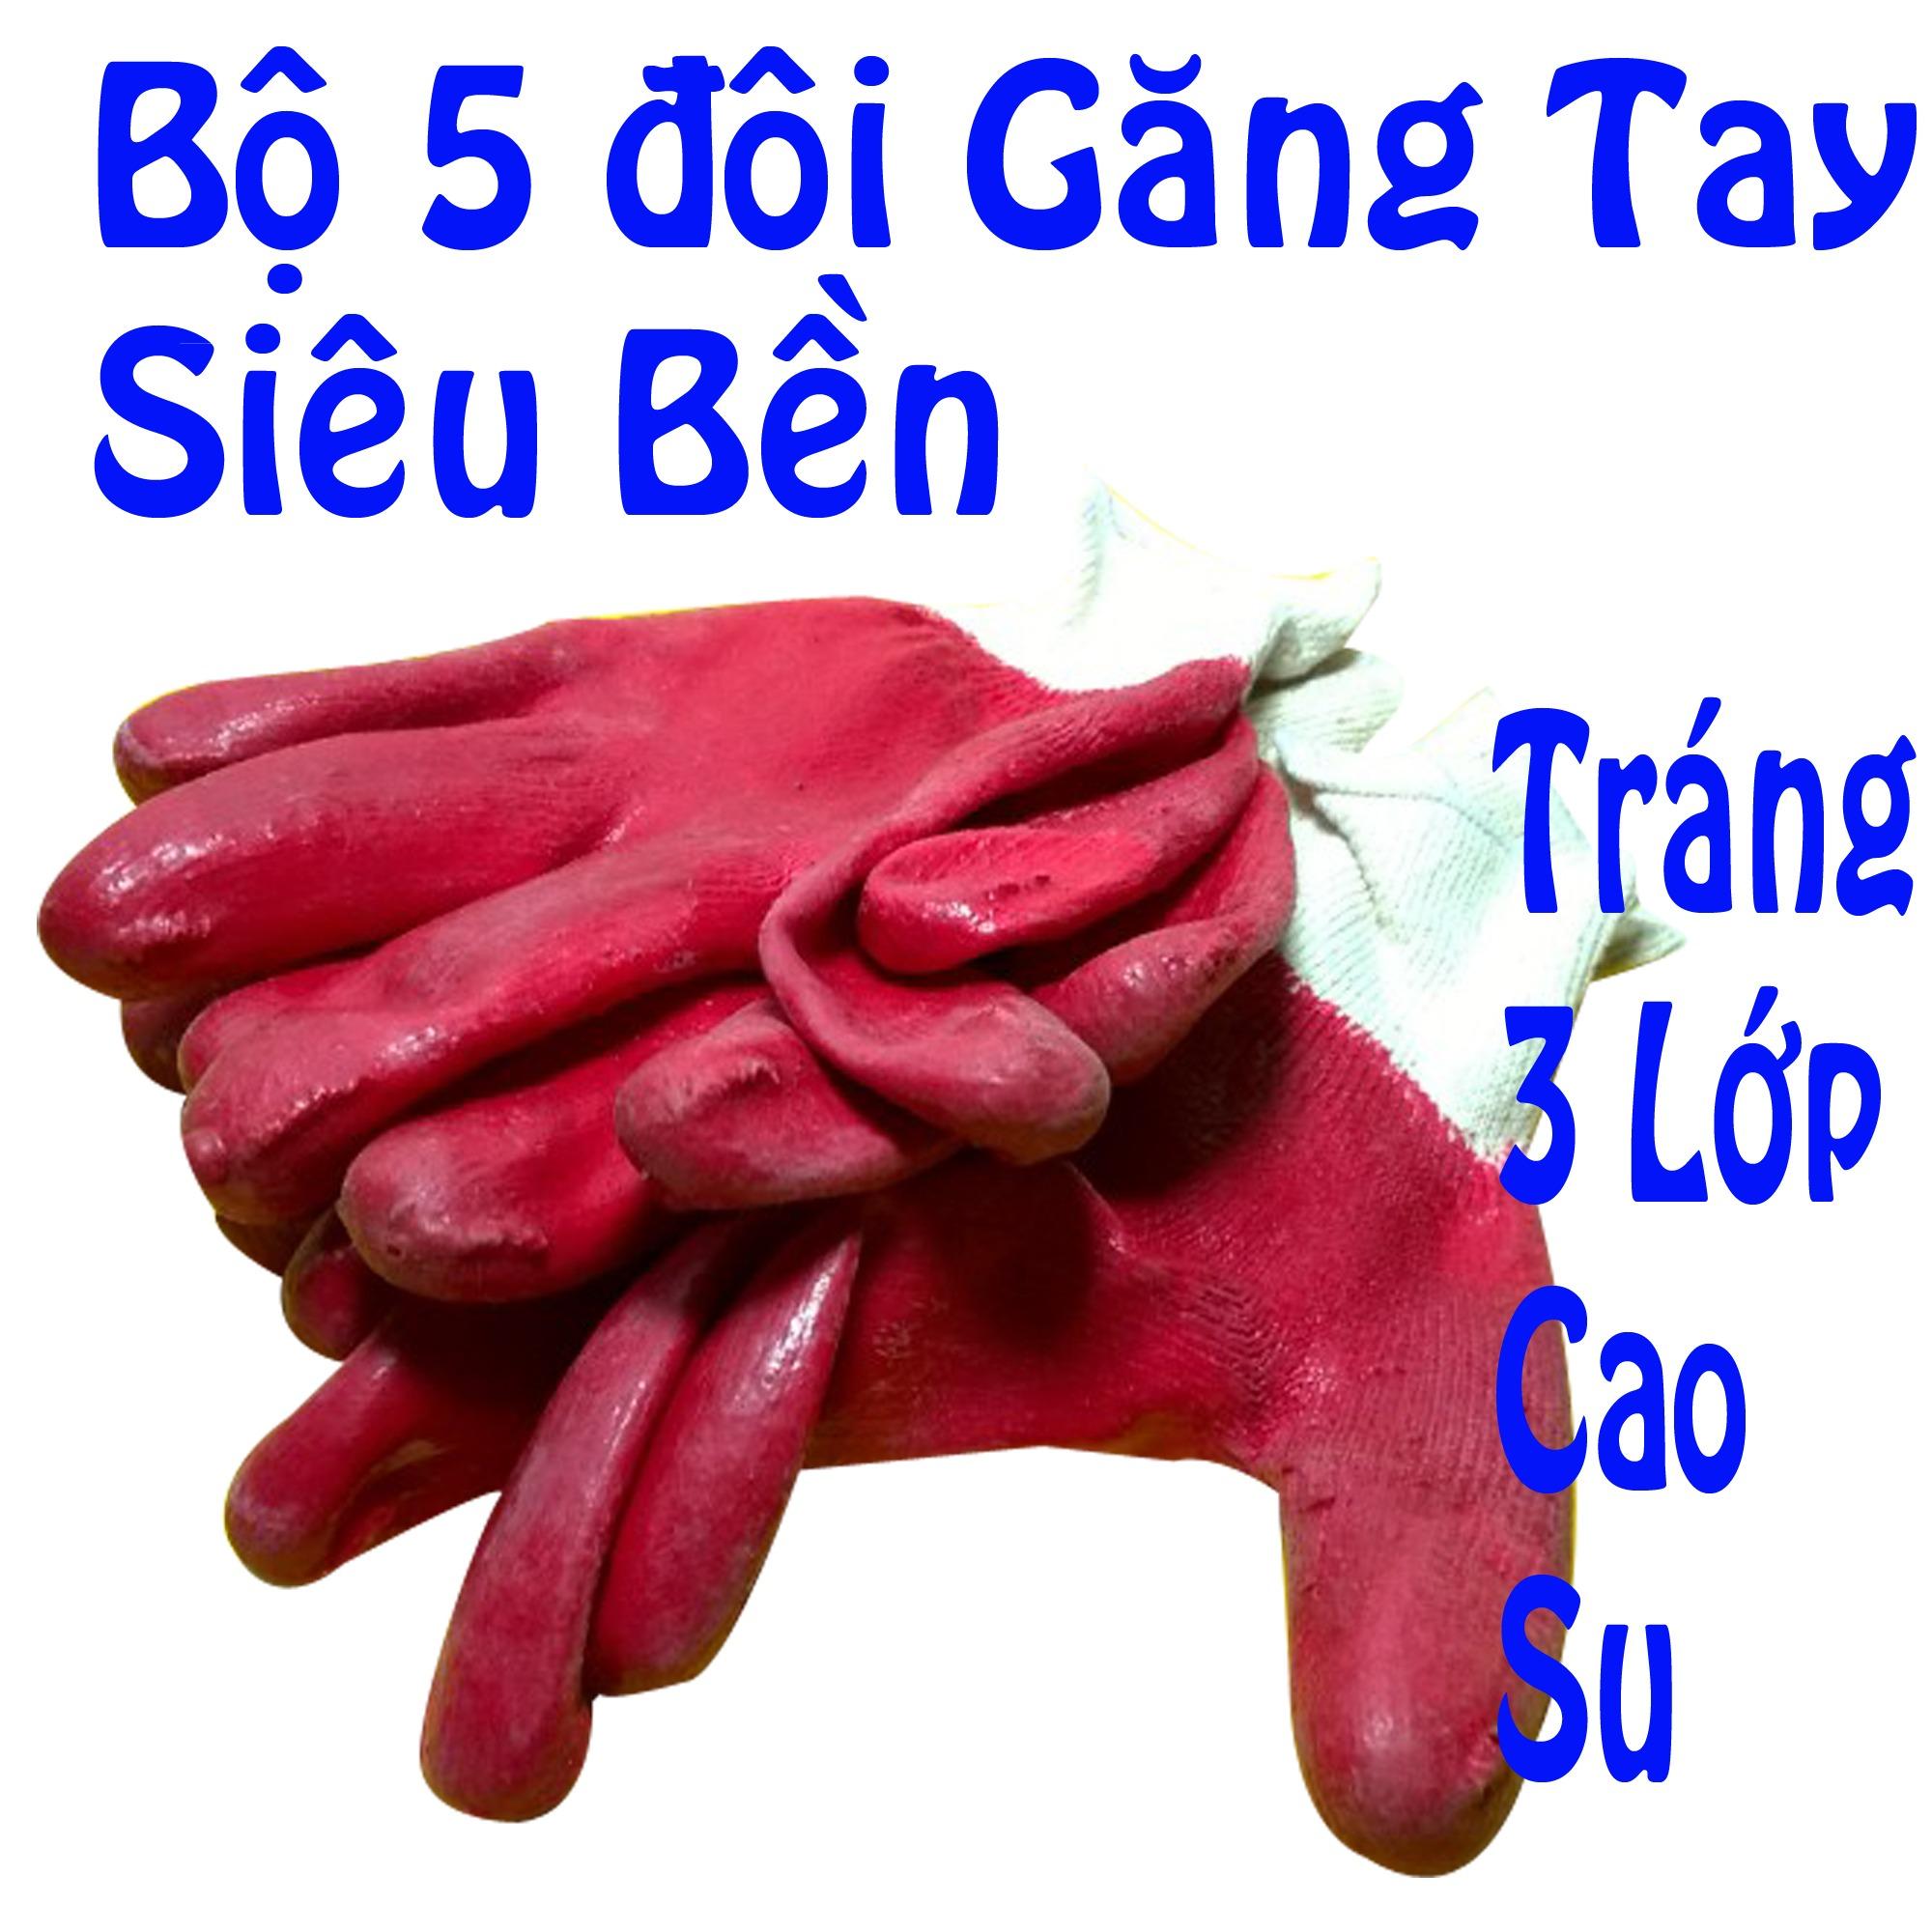 Bộ 5 đôi găng tay bảo hộ lao động màu ngẫu nhiên - gang tay bao ho lao dong